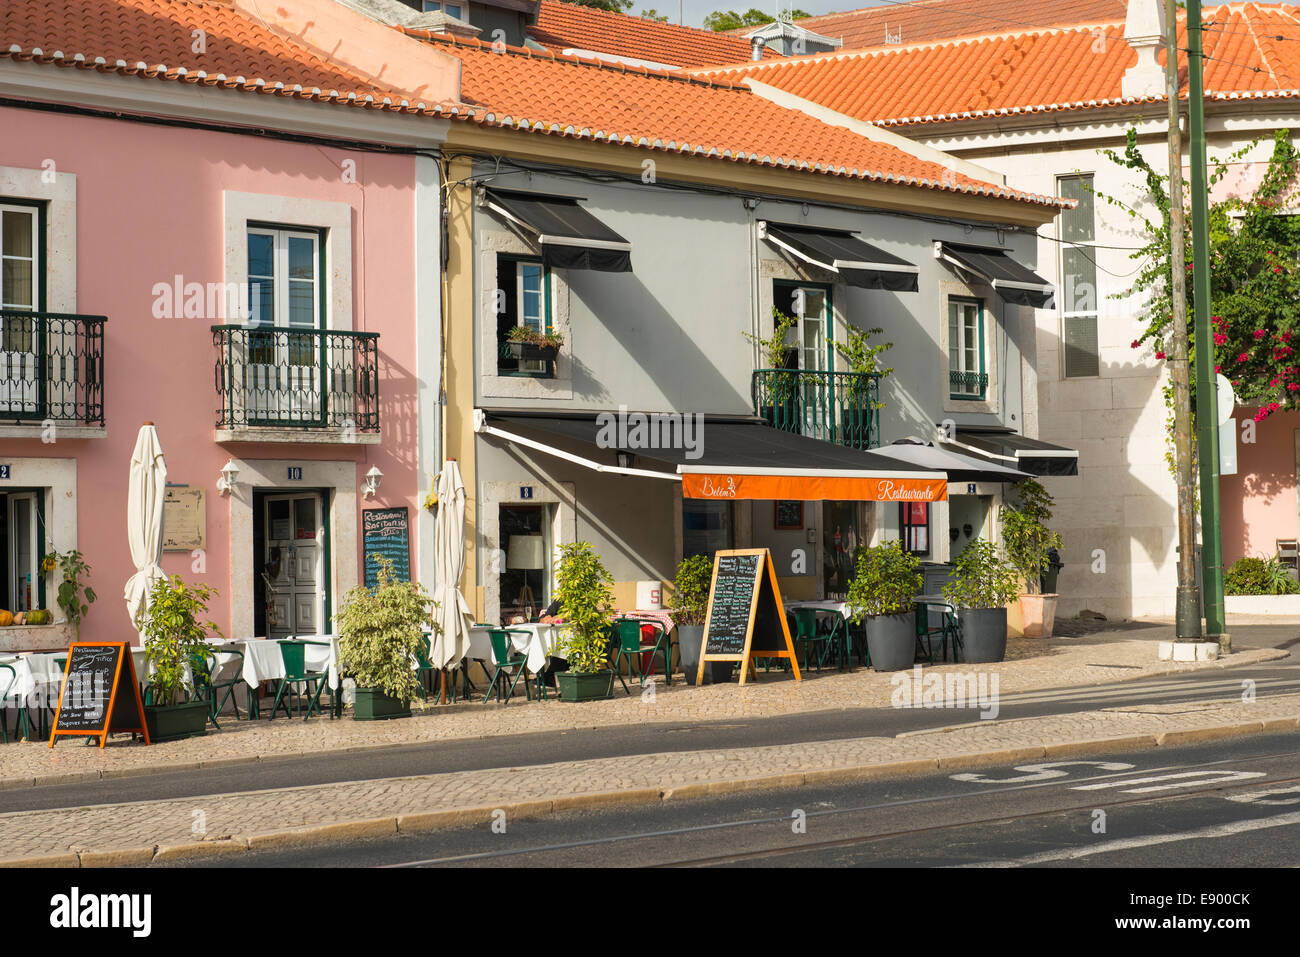 Scène typique de Lisbonne Portugal chaussée local restaurant Restaurant Sagitario & Belem 28 auvents auvent parasol stores aveugle Banque D'Images